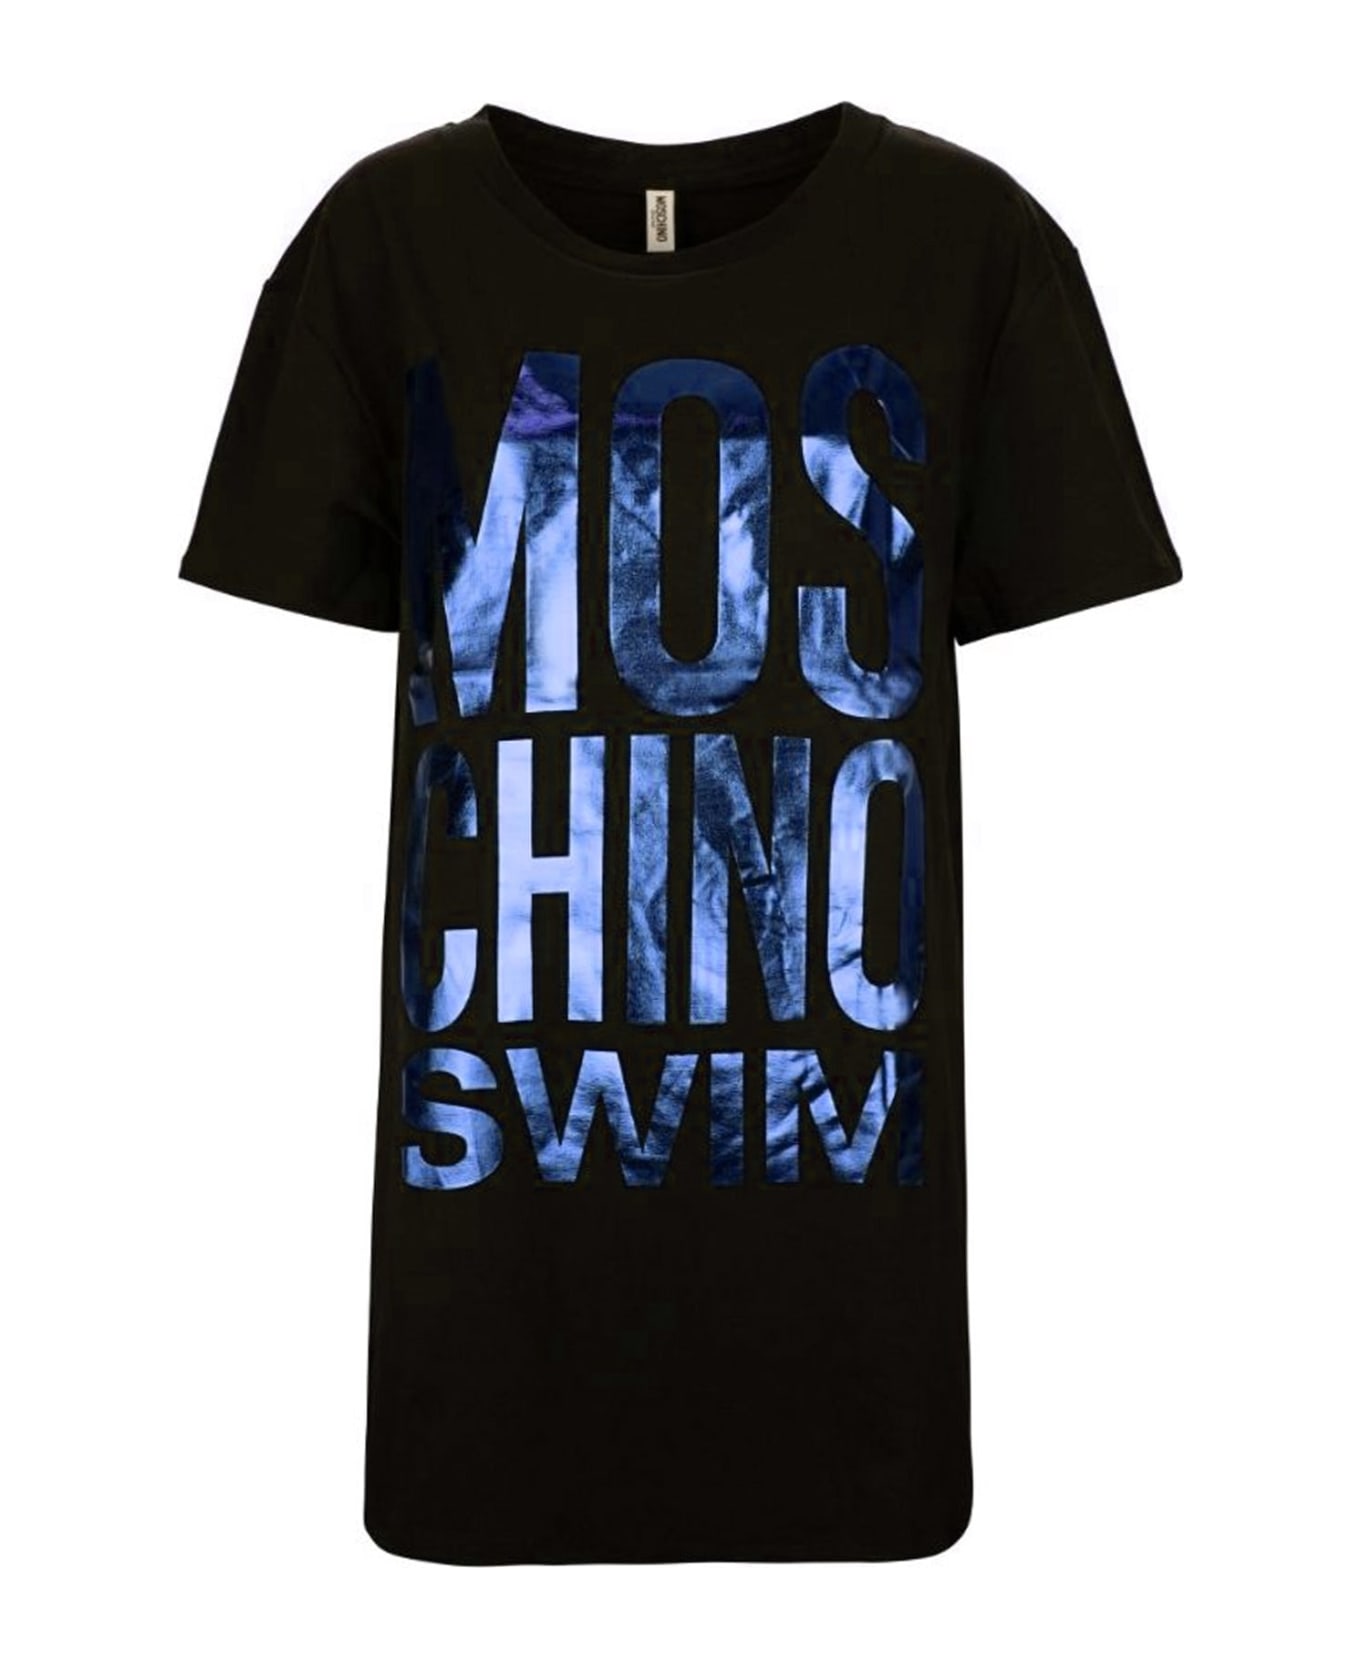 Moschino Swim Logo T-shirt - Black